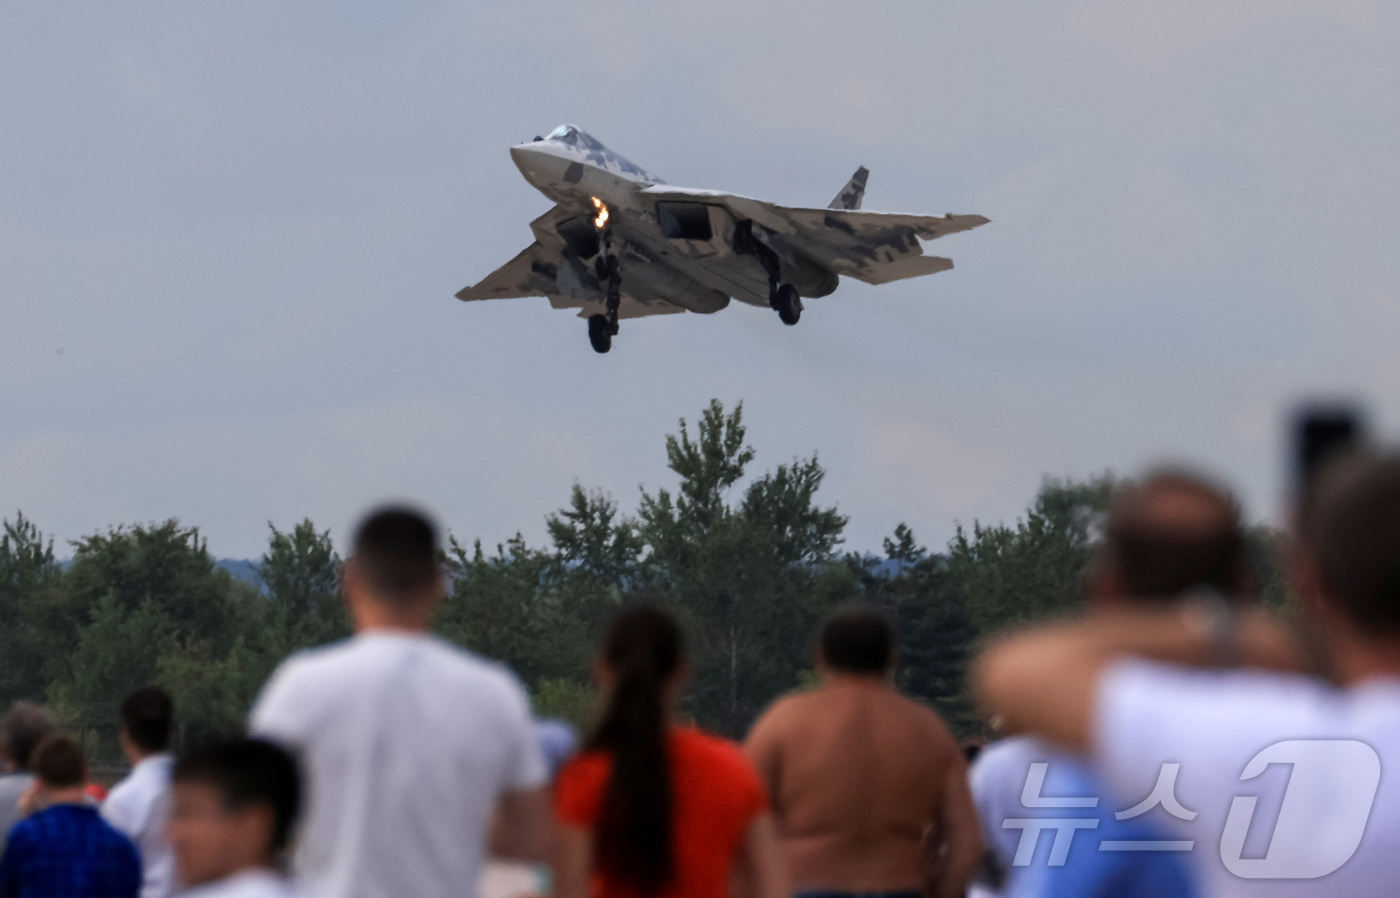 (츄코브스키 로이터=뉴스1) 김성식 기자 = 러시아 수도 모스크바 인근 츄코브스키 비행장에서 2021년 7월 열린 막스(Maks) 에어쇼에서 러시아 공군의 최신예 전투기 'Su-5 …